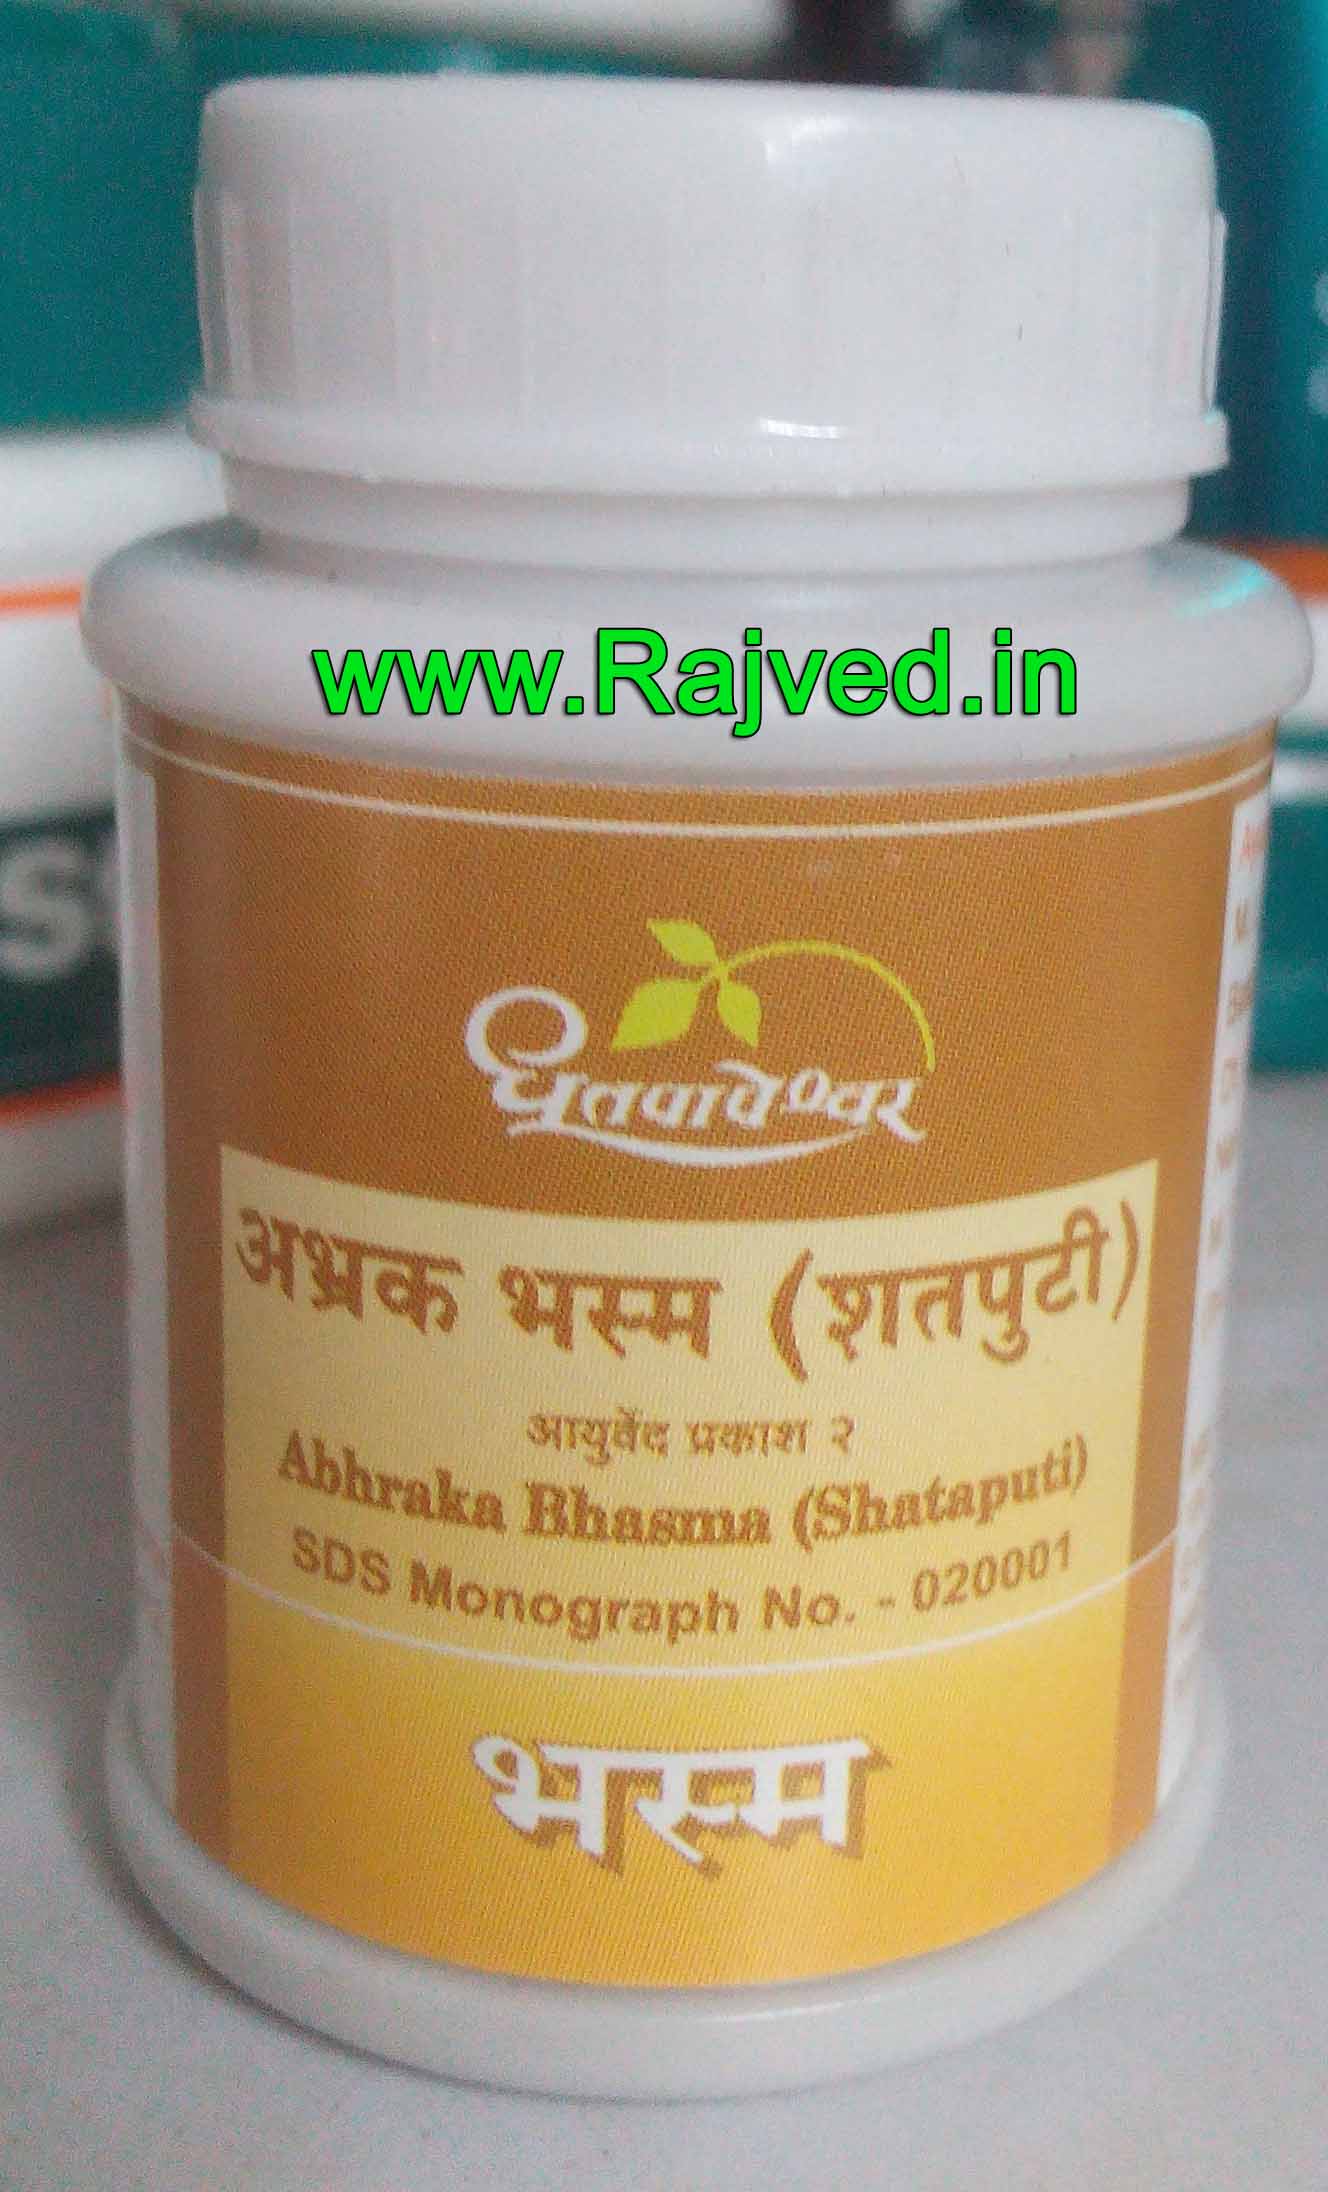 abhraka bhasma shataputi 5gm upto 20% off shree dhootpapeshwar panvel